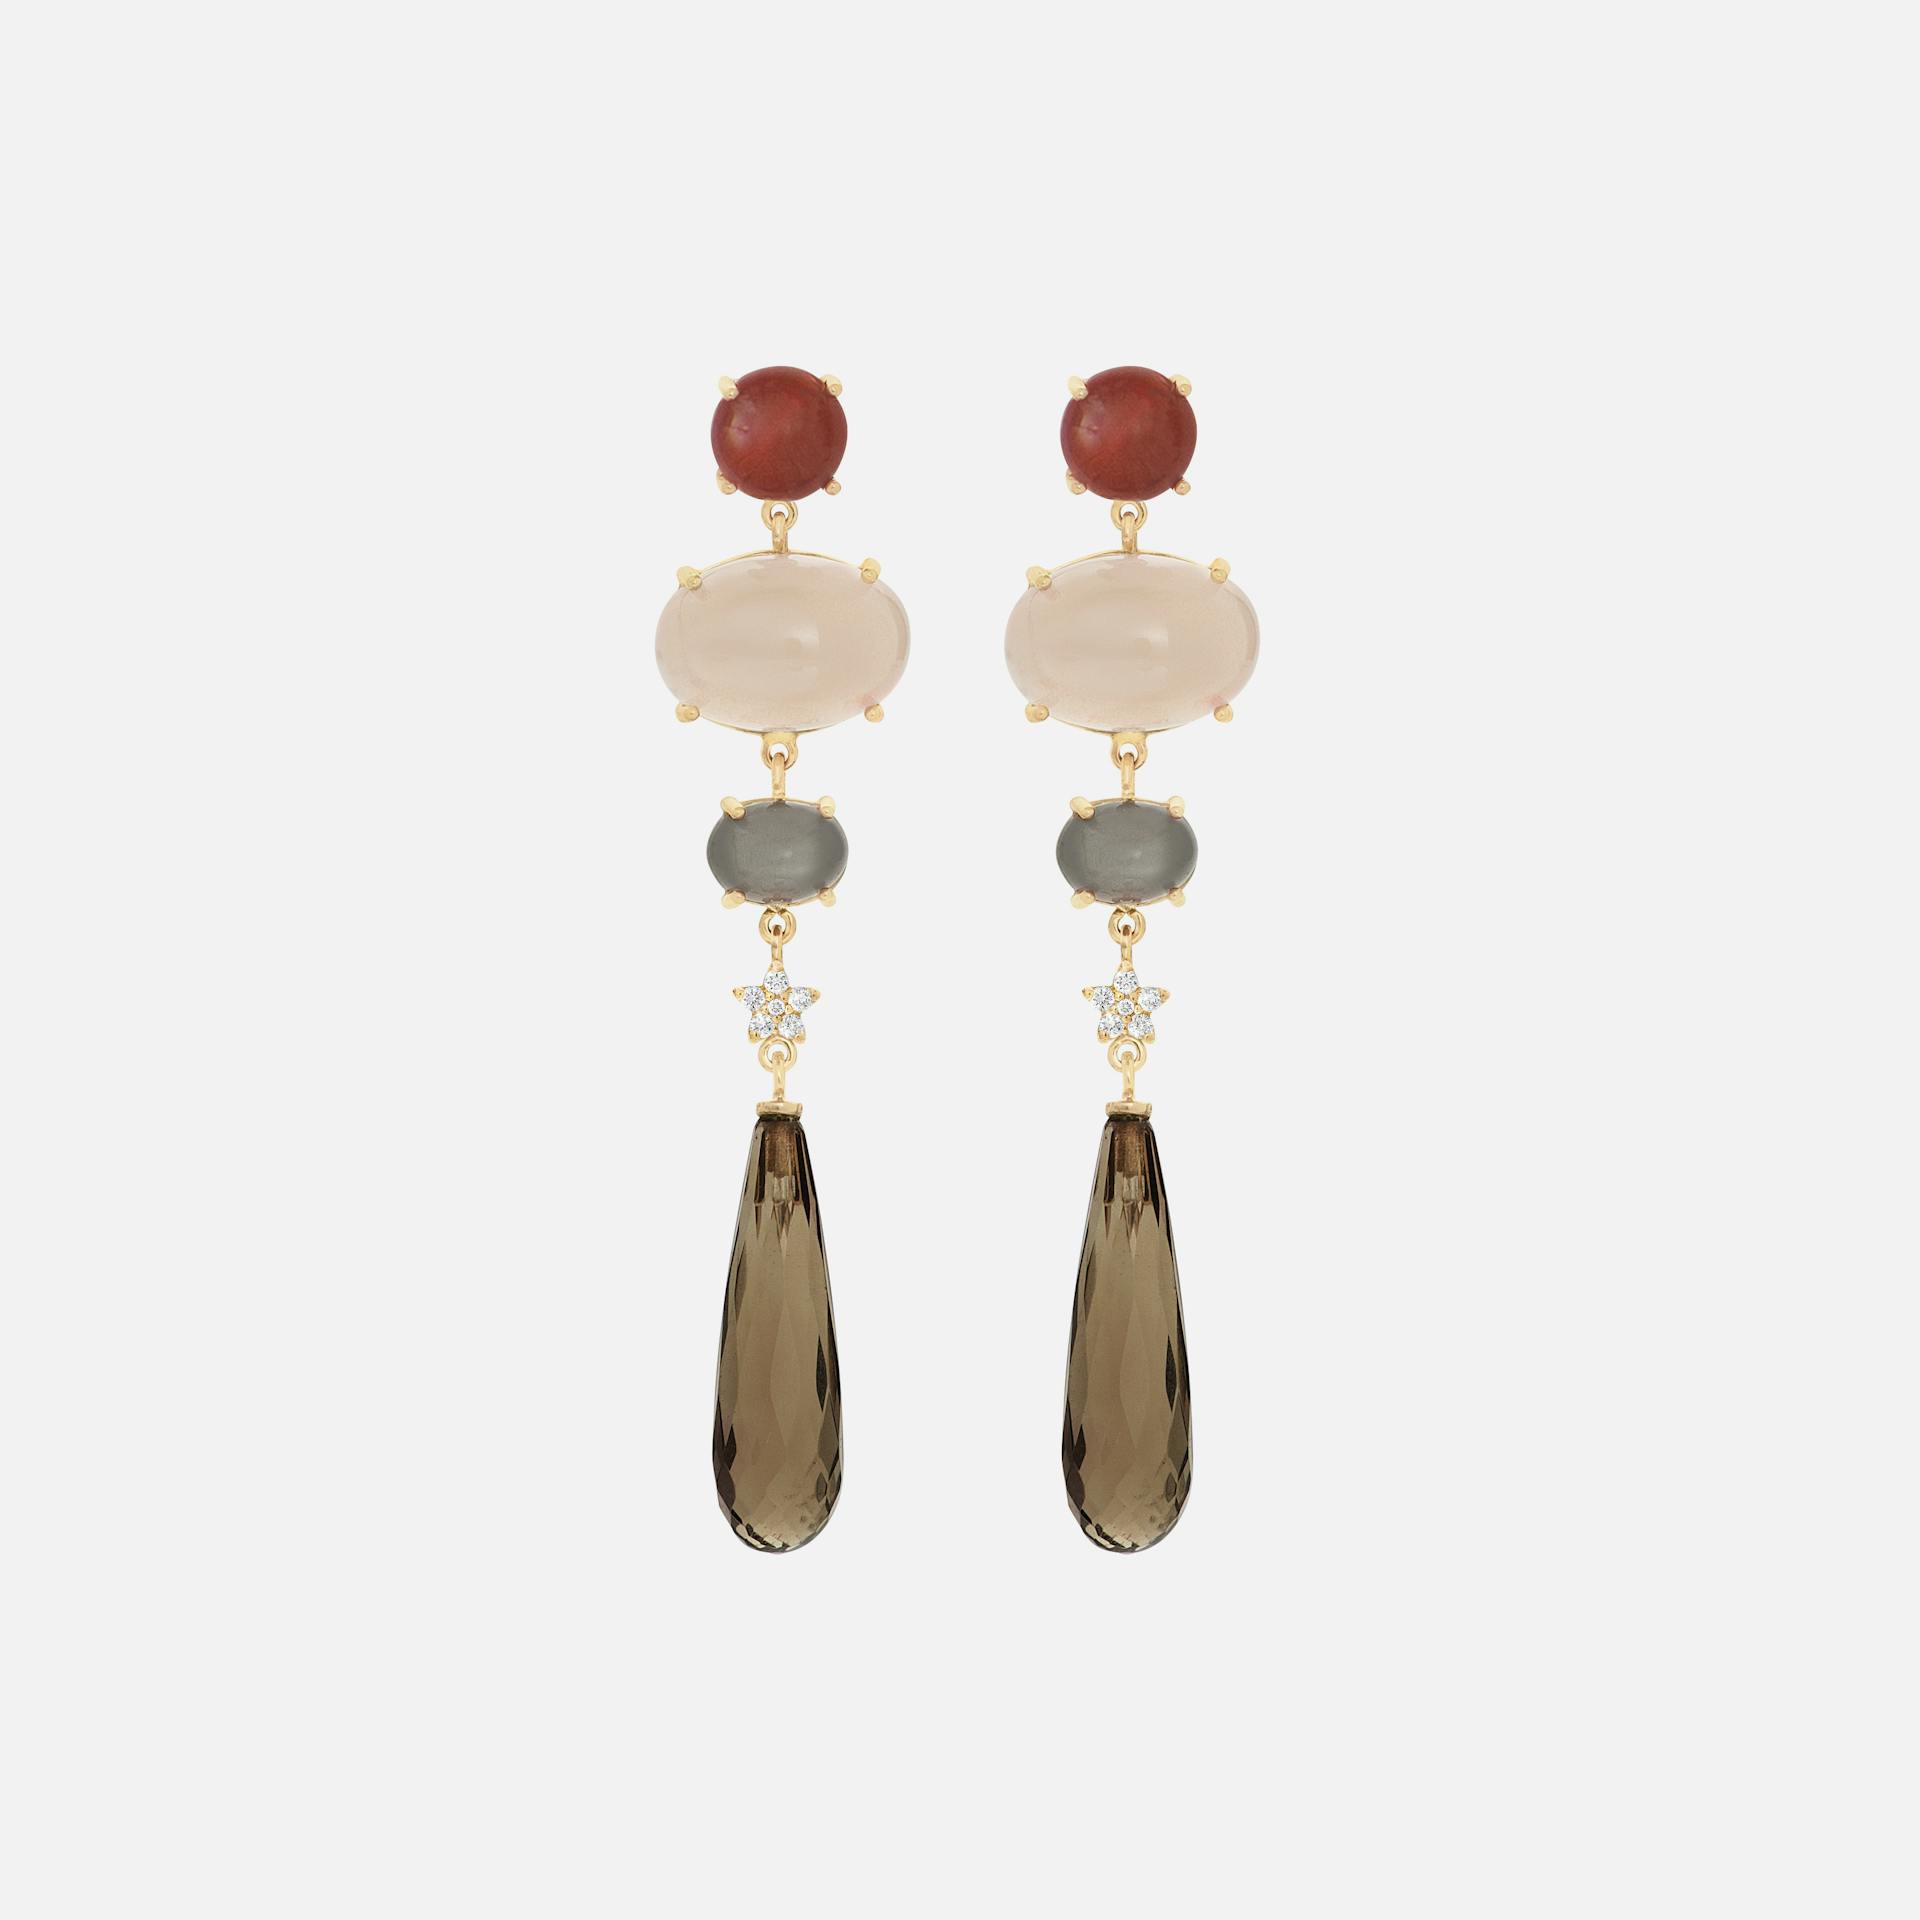 Lotus Earrings in Gold with Diamonds, Carnelian, Moonstone & Smoky Quartz Drops  |  Ole Lynggaard Copenhagen 